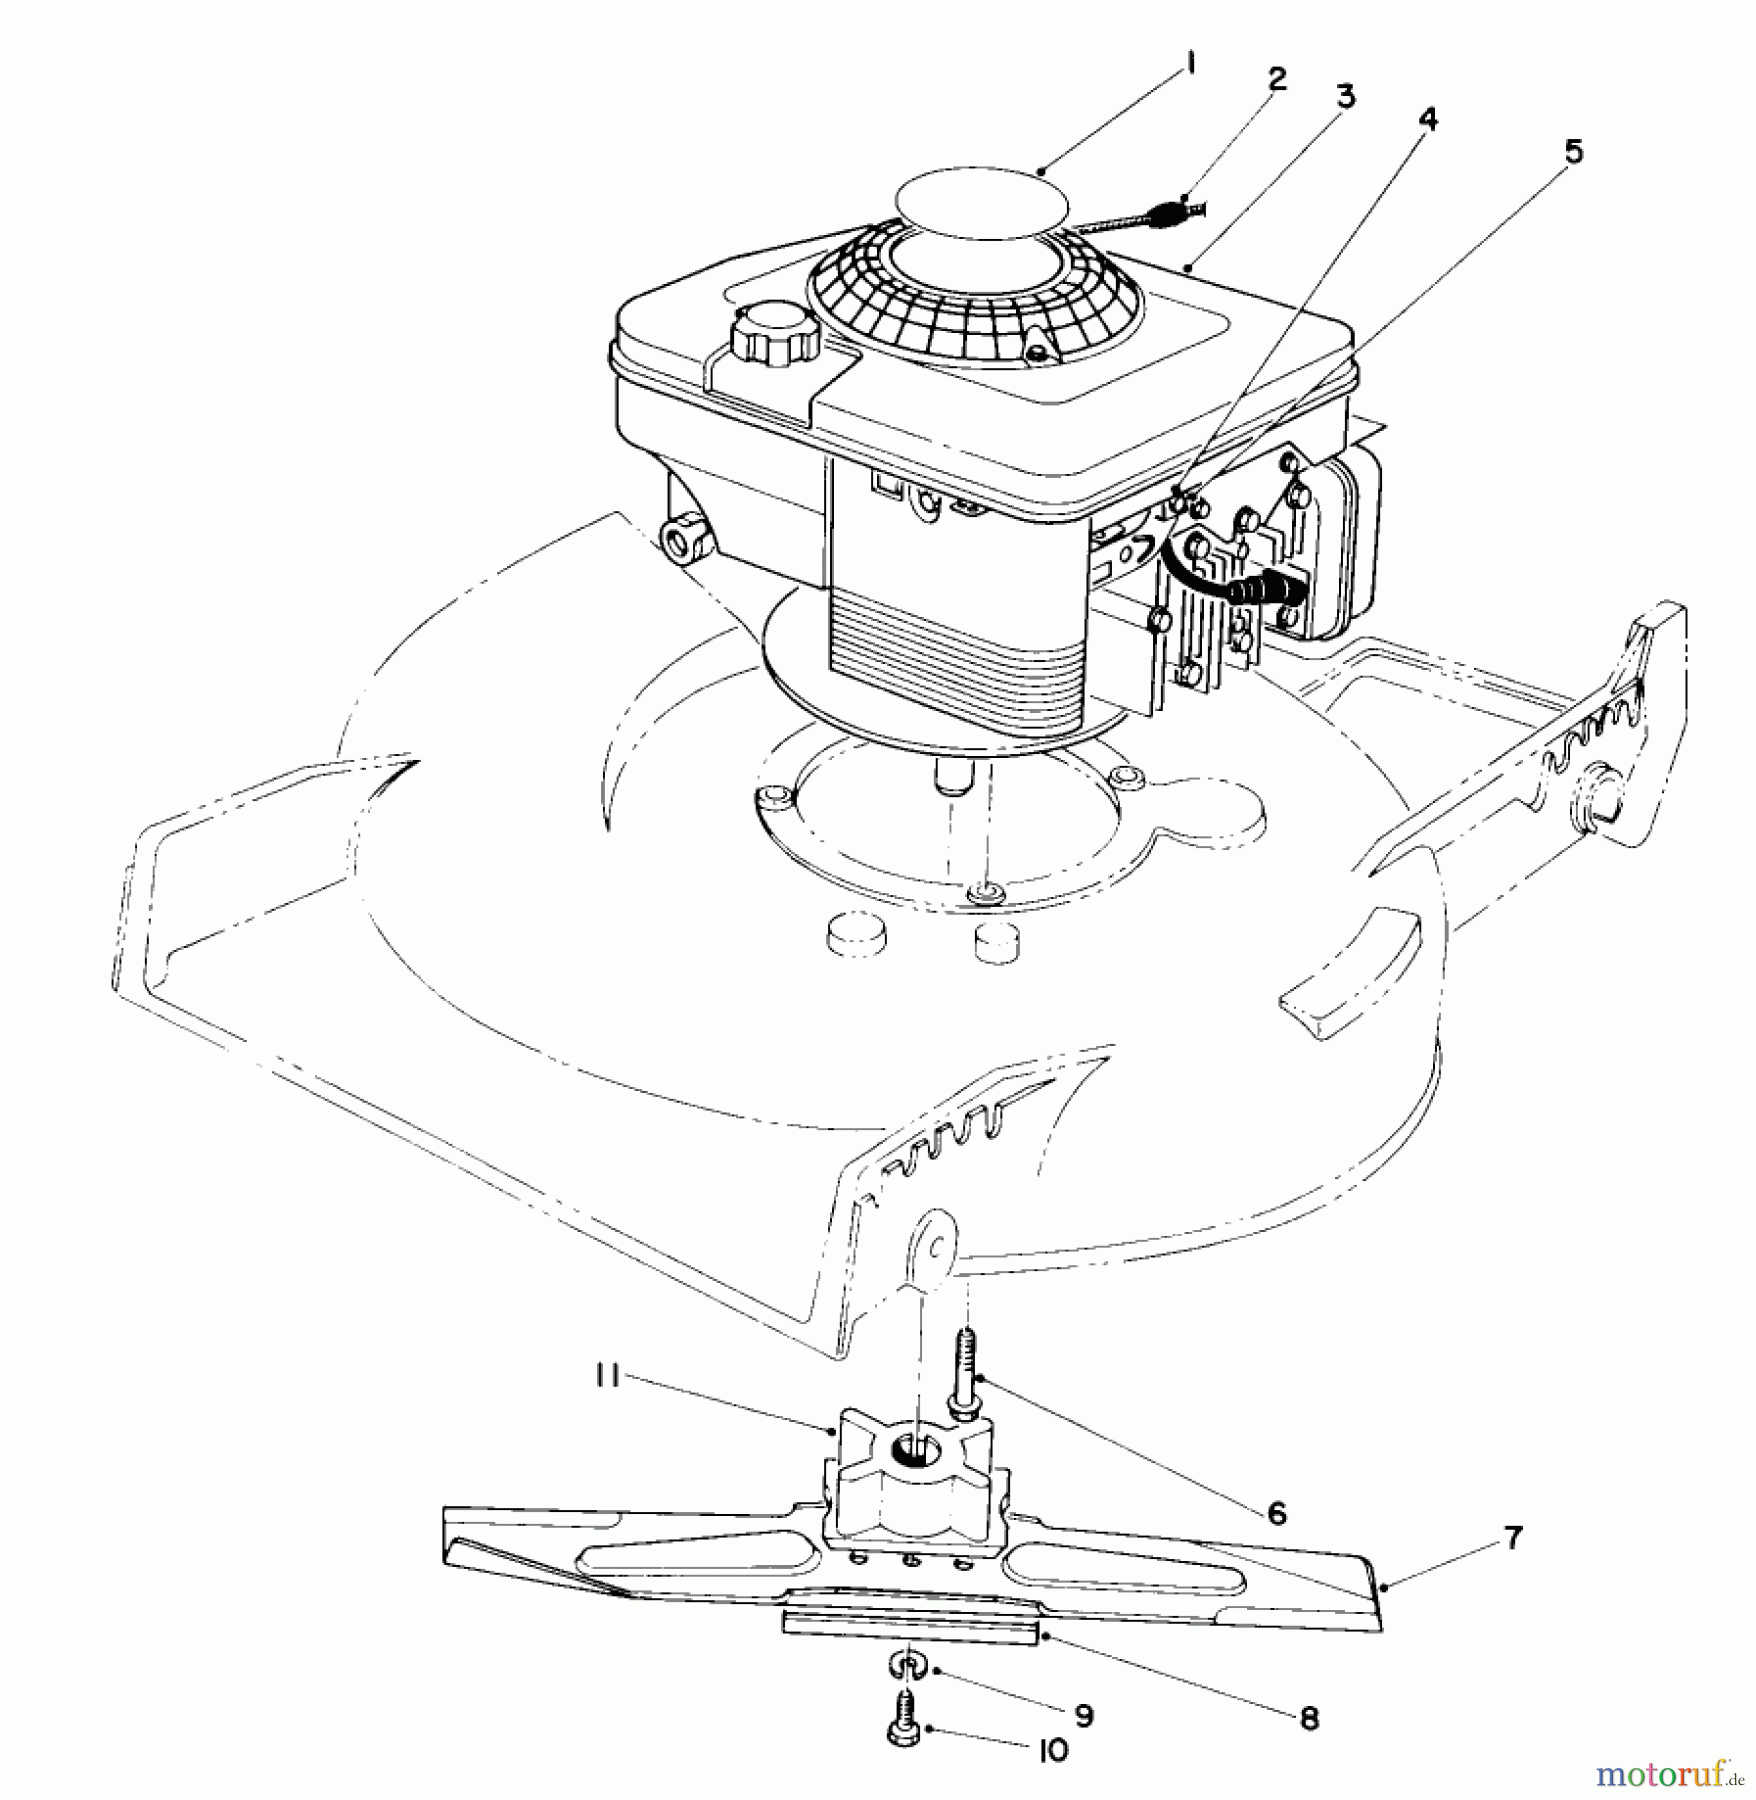  Toro Neu Mowers, Walk-Behind Seite 1 20561 - Toro Lawnmower, 1990 (0000001-0999999) ENGINE ASSEMBLY